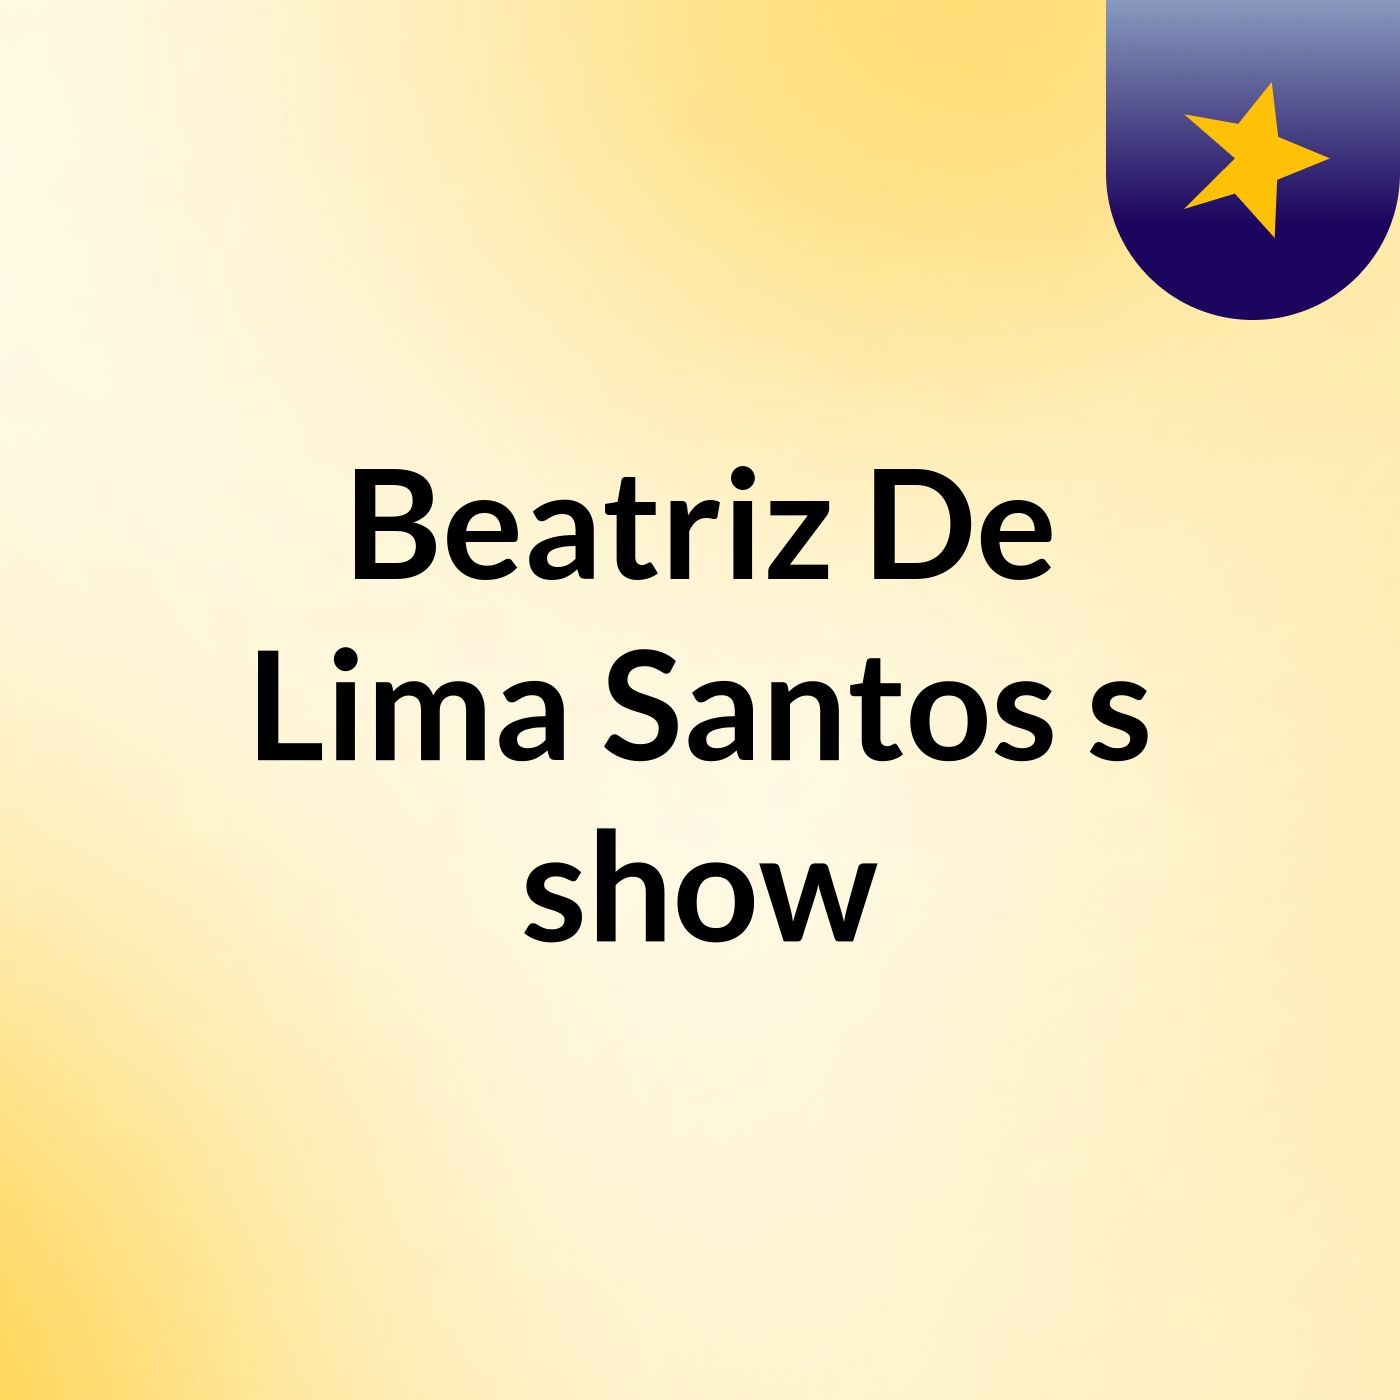 Beatriz De Lima Santos's show